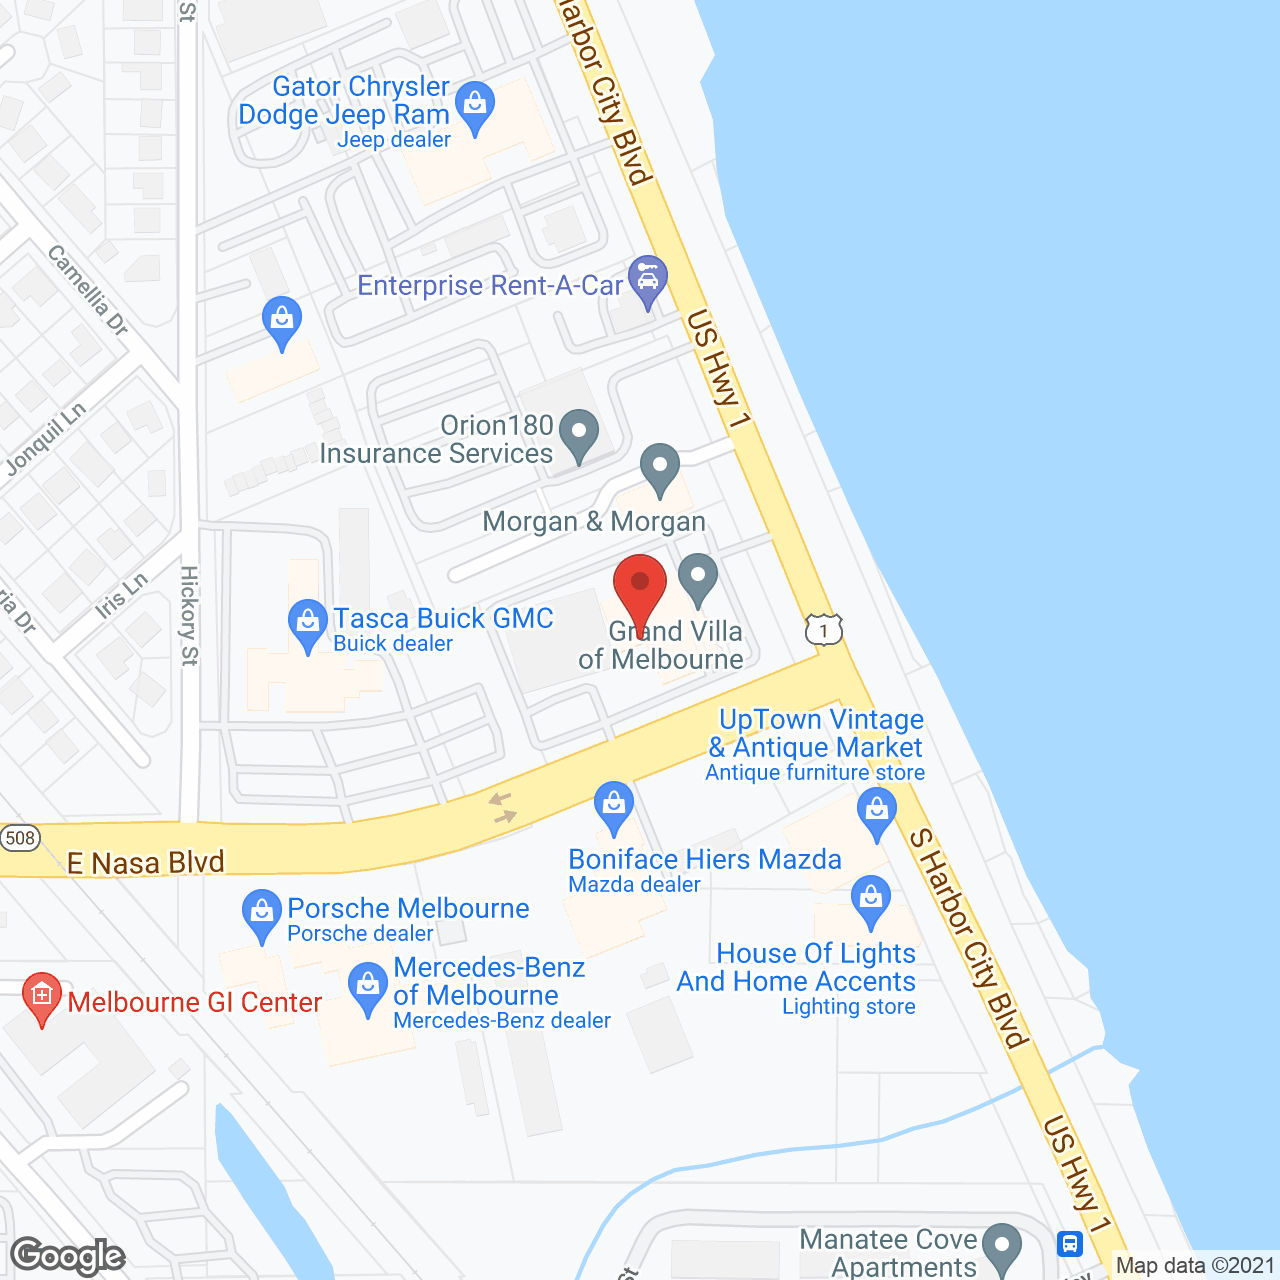 Harborside at Melbourne in google map